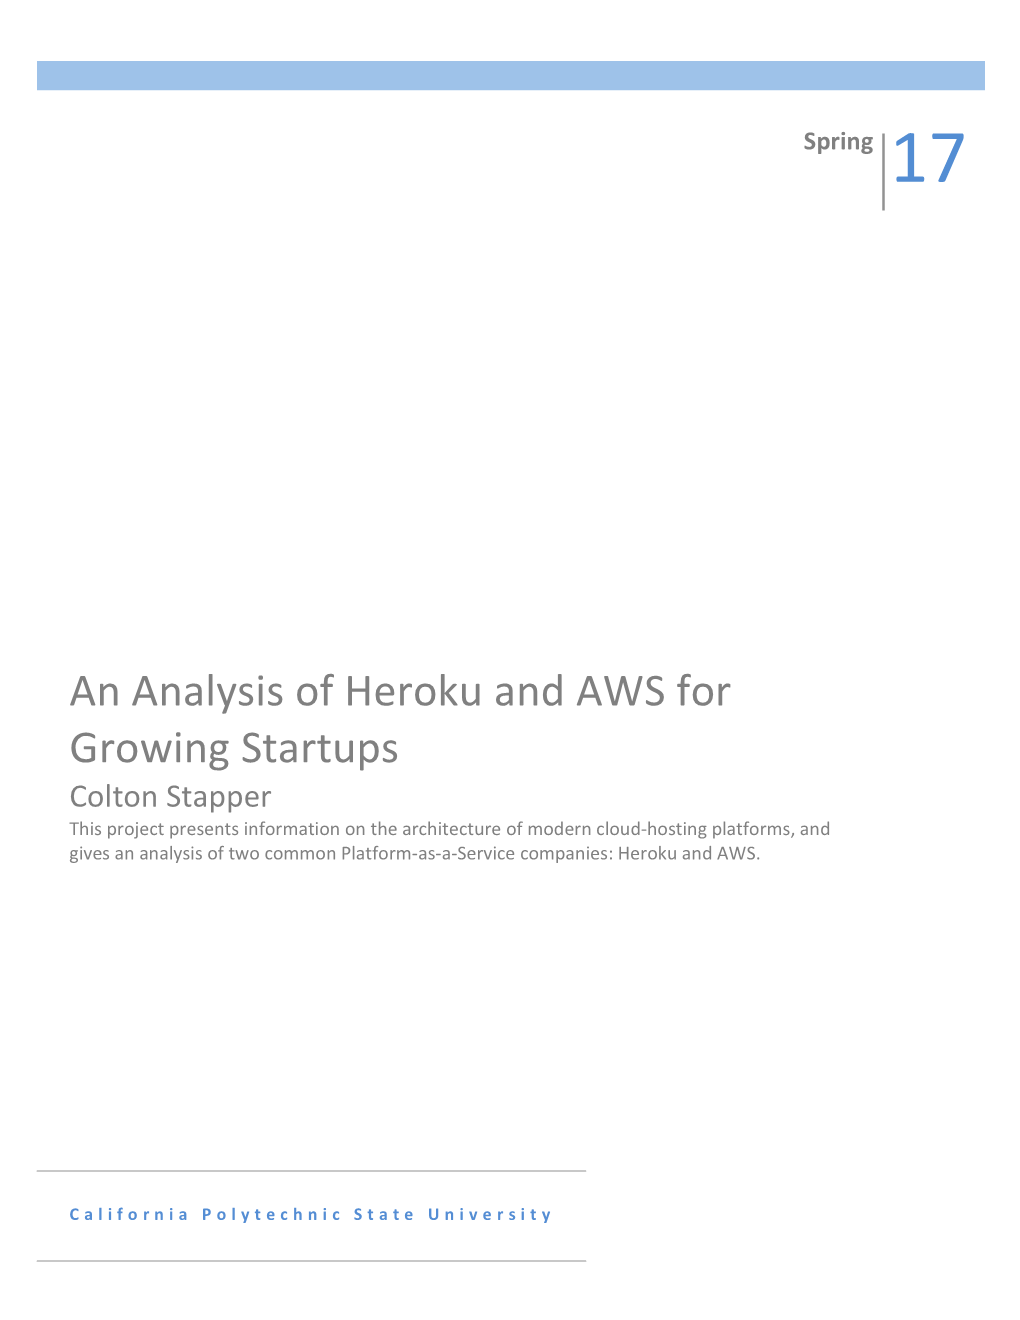 An Analysis of Heroku and AWS for Growing Startups